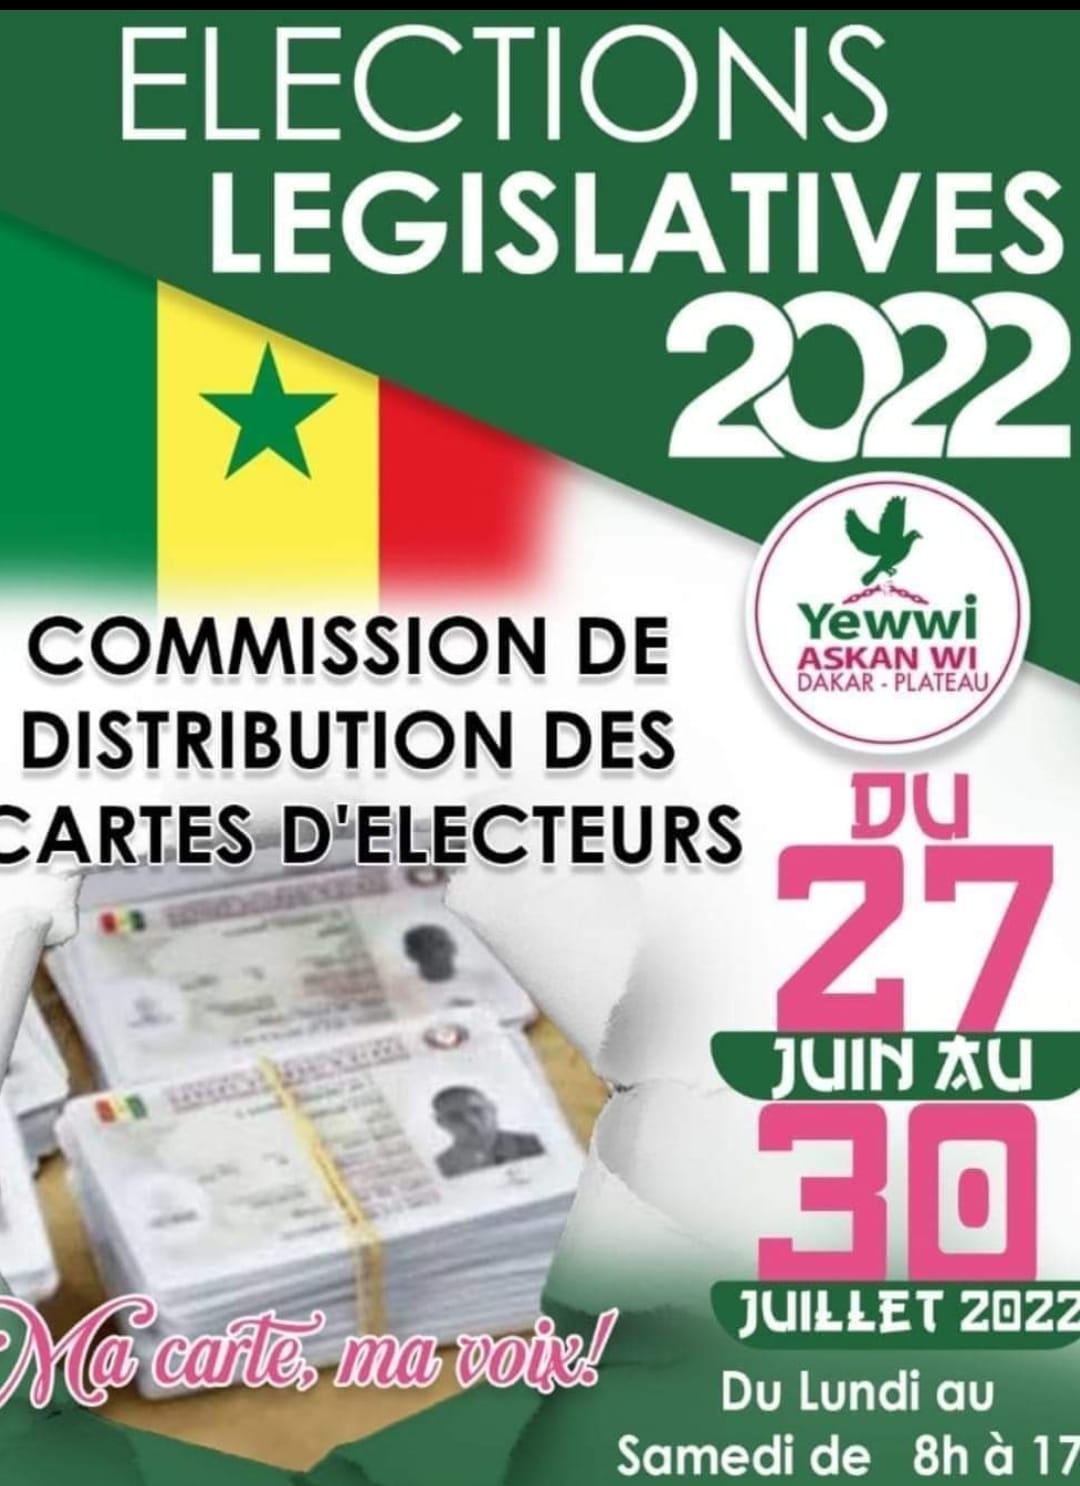 Distribution des cartes d'électeurs dans la diaspora : Les dates à retenir...